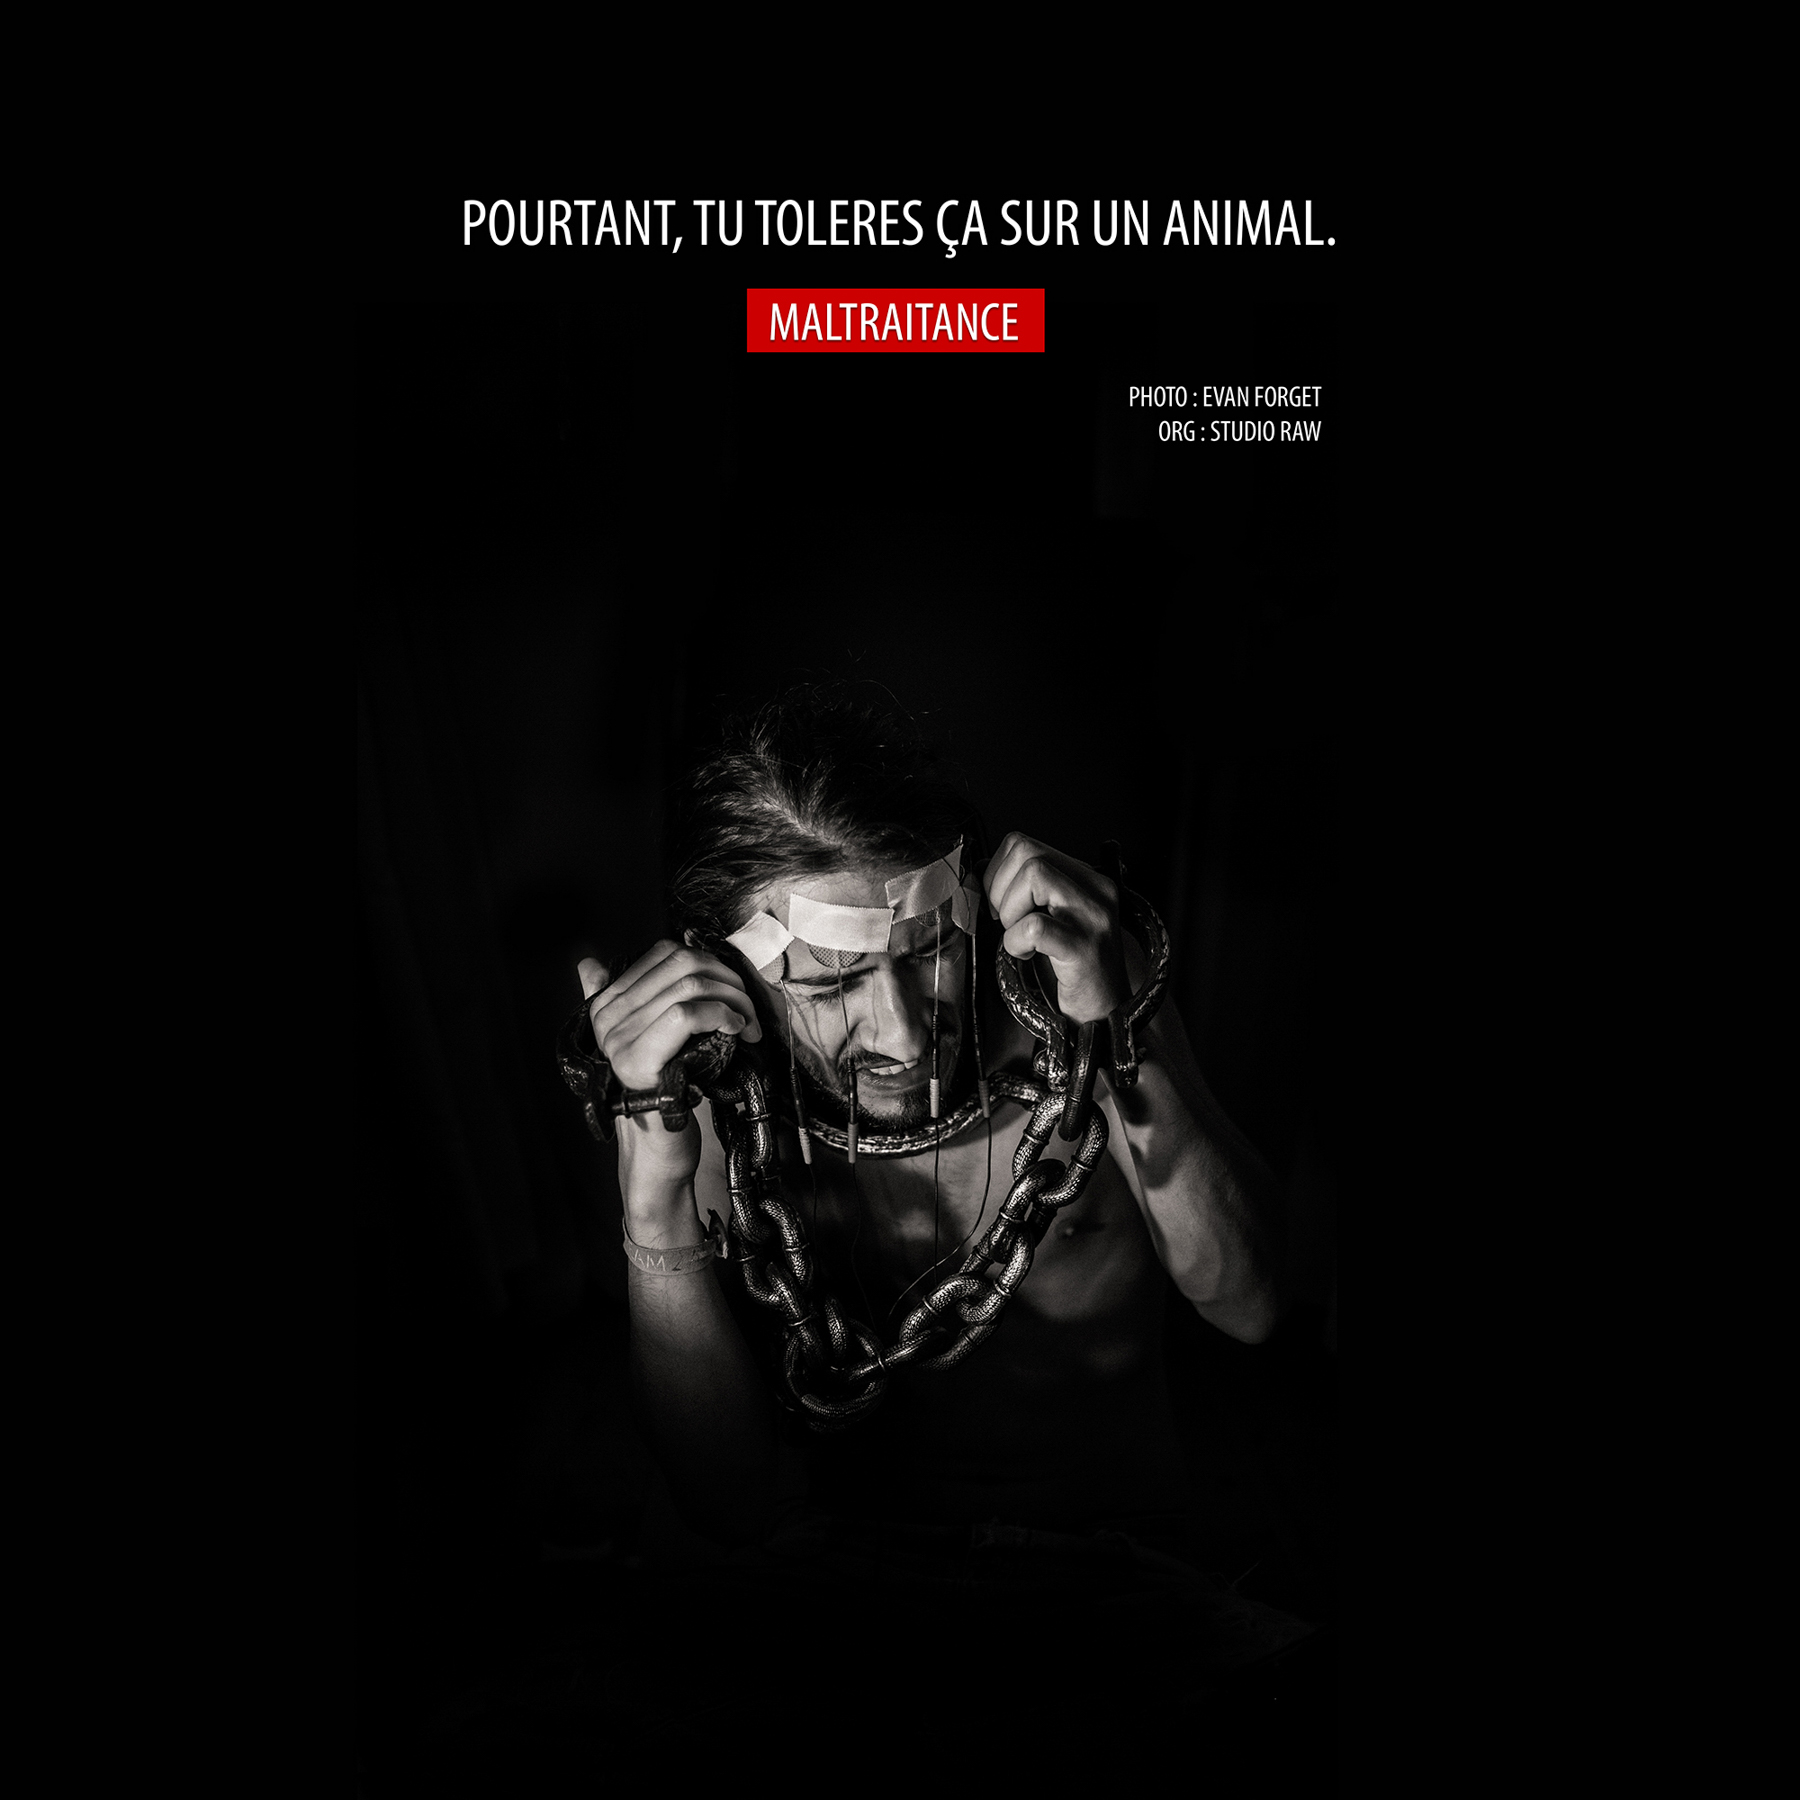 Maltraitance Animale – Evan Forget – 2015 – Photographe sur Nant